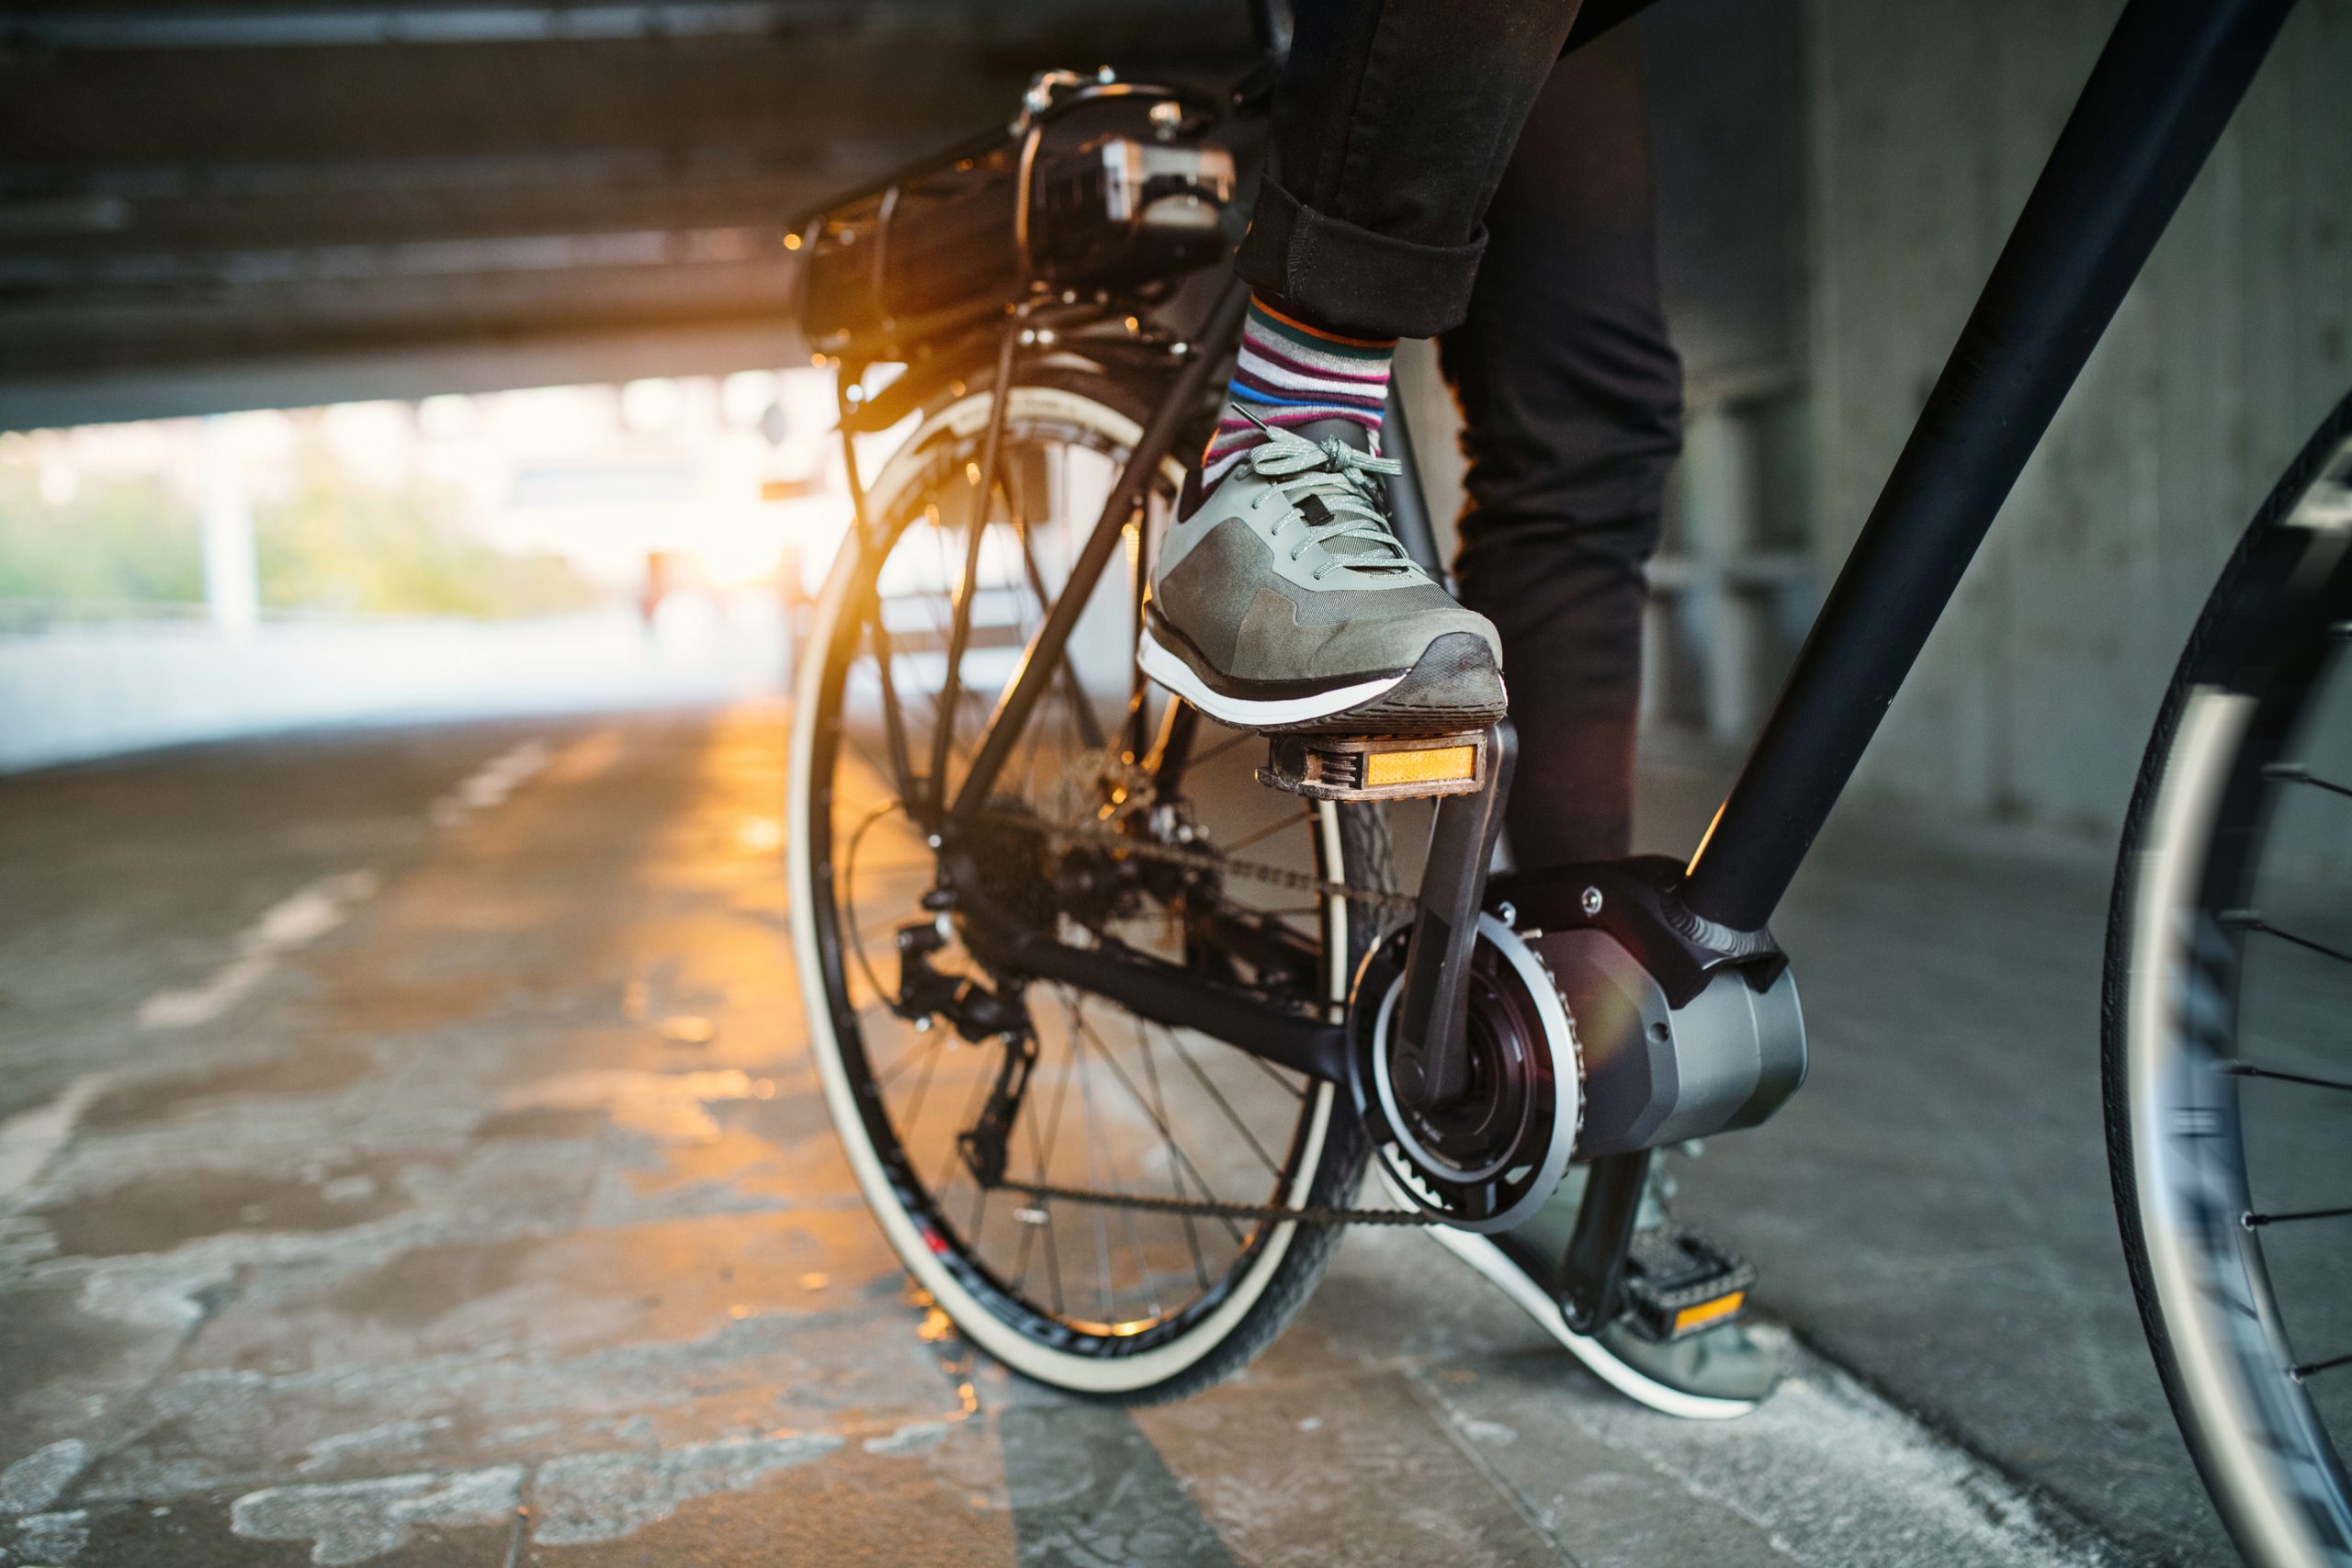 Leeg de prullenbak invoer uitstulping De beste woon-werk elektrische fiets - Moby